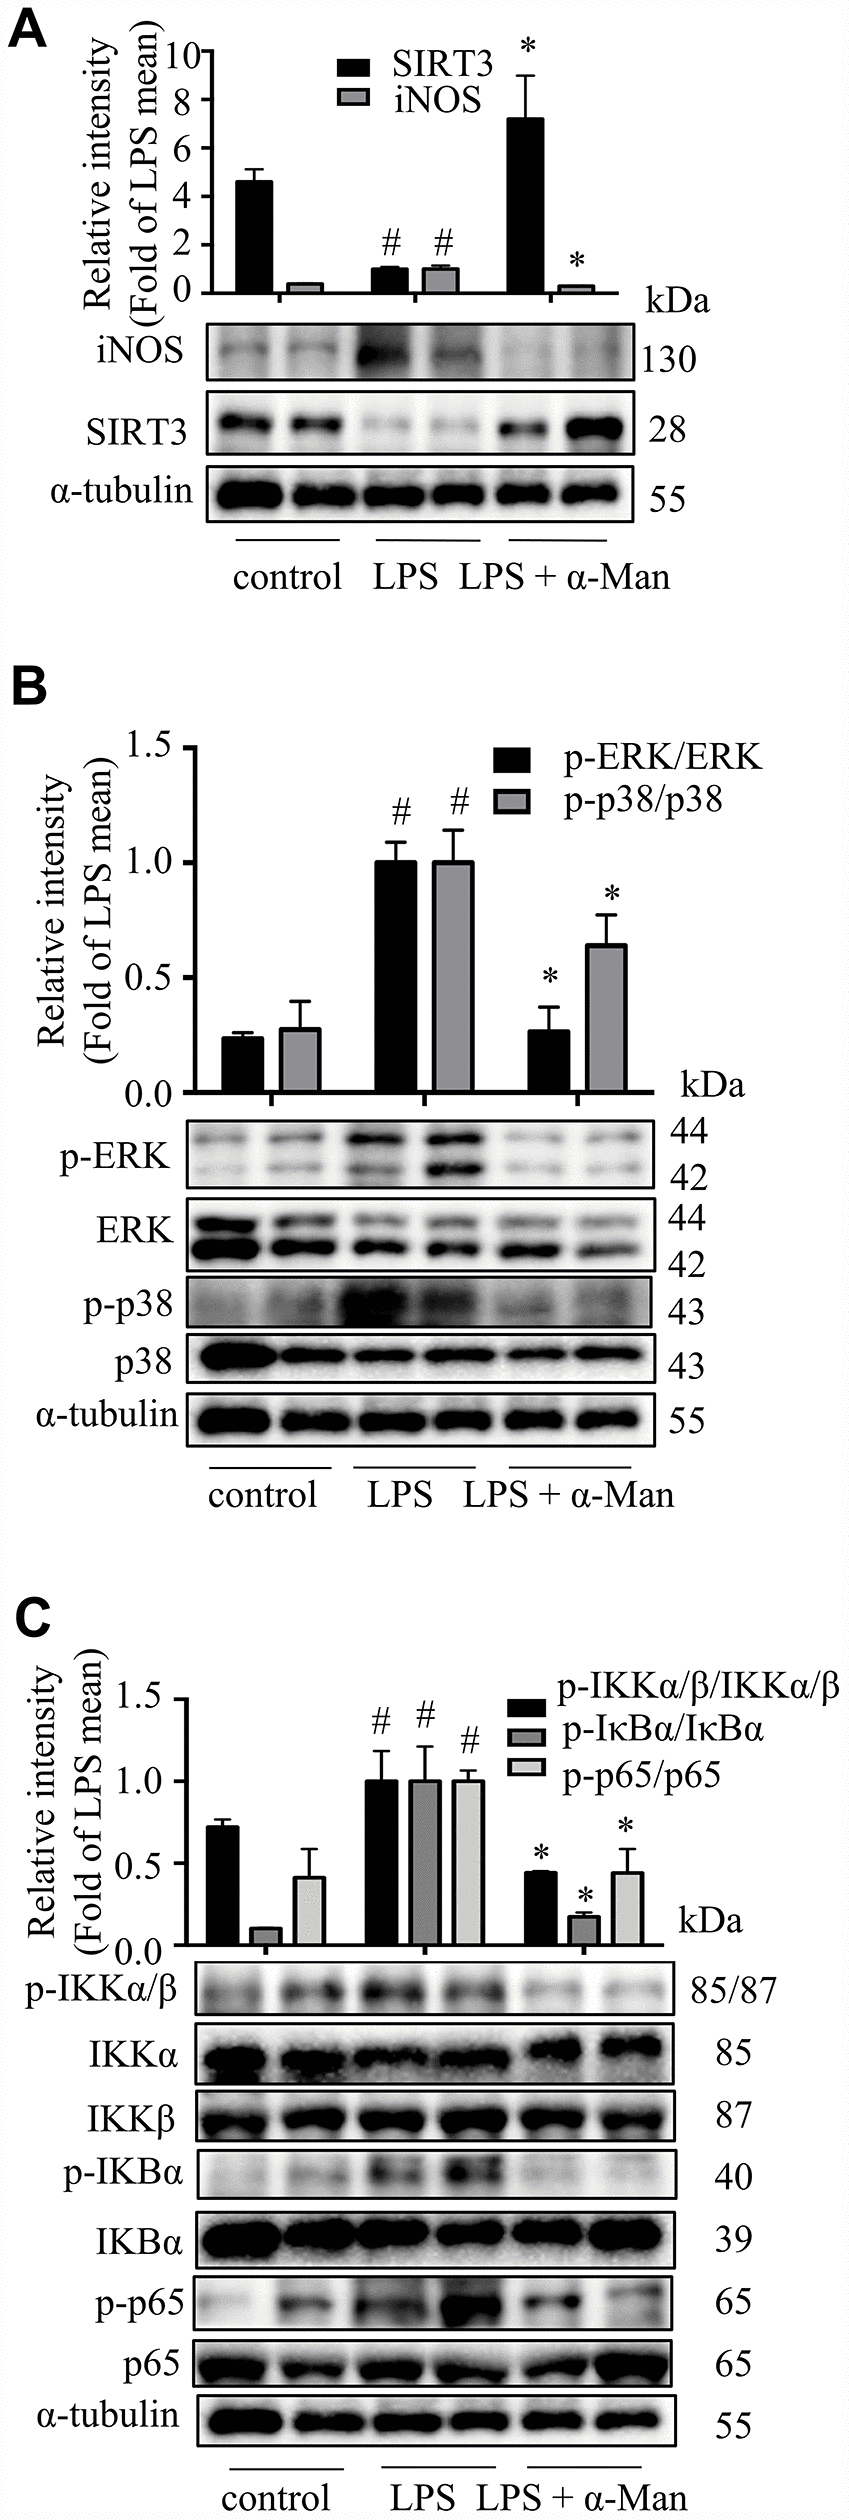 α-Man blocks MAPKs and NF-κB pathways and activates SIRT3 in eWAT from LPS-treated mice. (A) The expression of iNOS and SIRT3 in eWAT were detected by Western blot analyses. (B) The expression of p-ERK, ERK, p-p38 and p38 were detected by Western blot. (C) The expression of p-IKKα/β, IKKα, IKKβ, p-IκBα, IκBα, p-p65 and p65 were detected by Western blot. α-Tubulin was used as an internal control. Data are expressed as means ± SD (n = 5). #P *P 